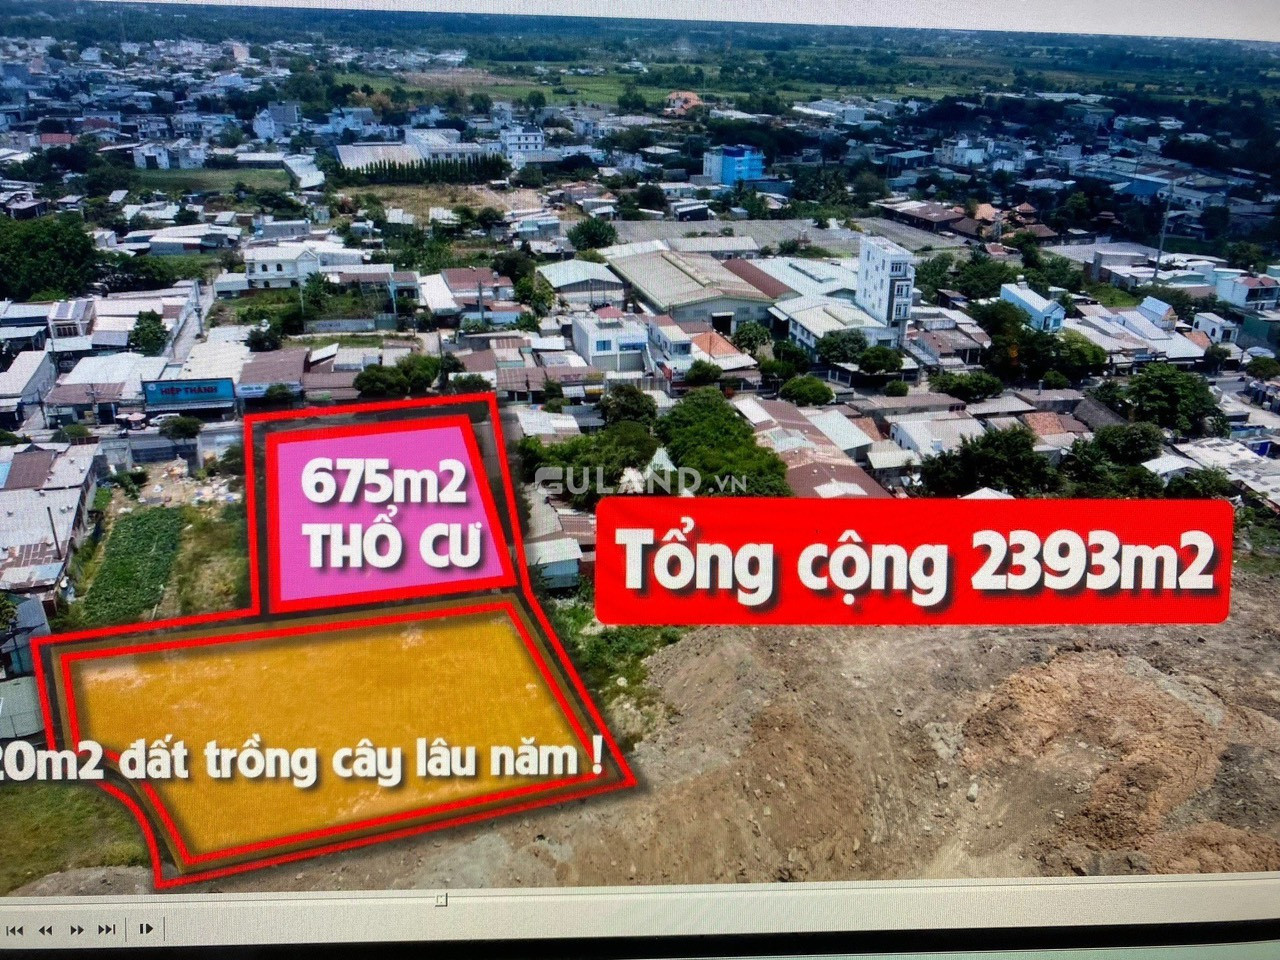 Mt đường Lê Văn Khương giá siu rẻ  giảm còn 88 tỷ